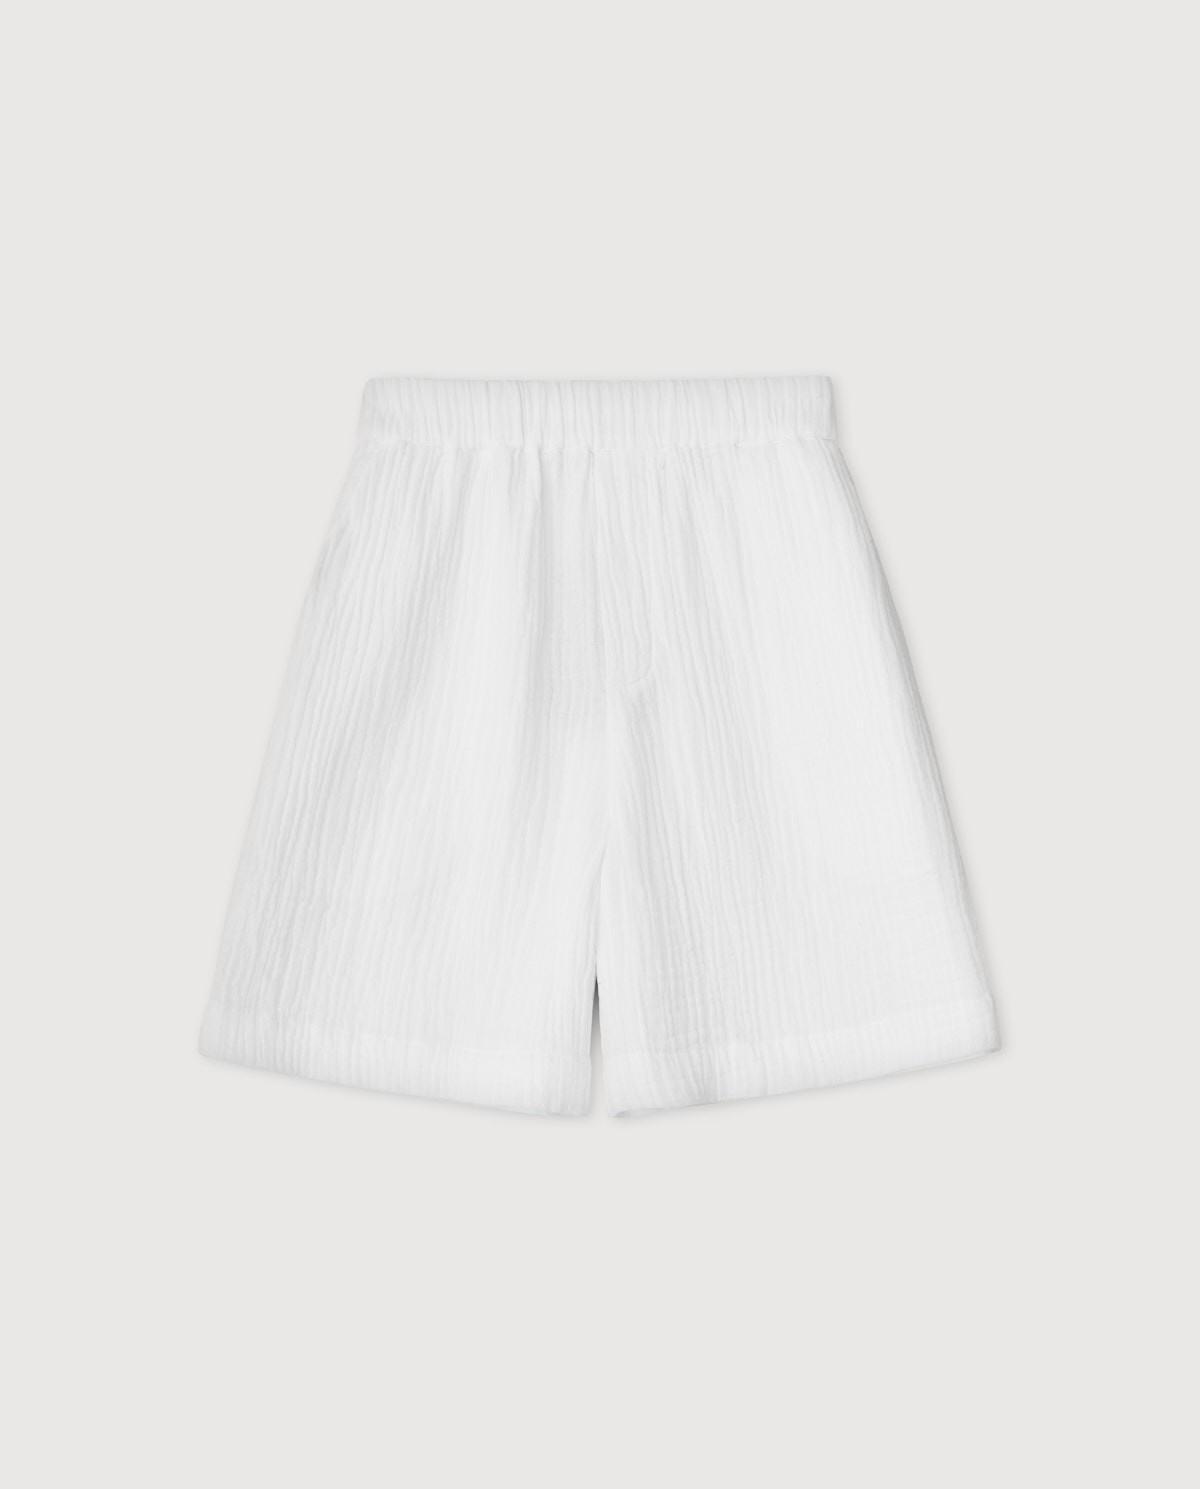 100% cotton shorts OPTICAL WHITE 6